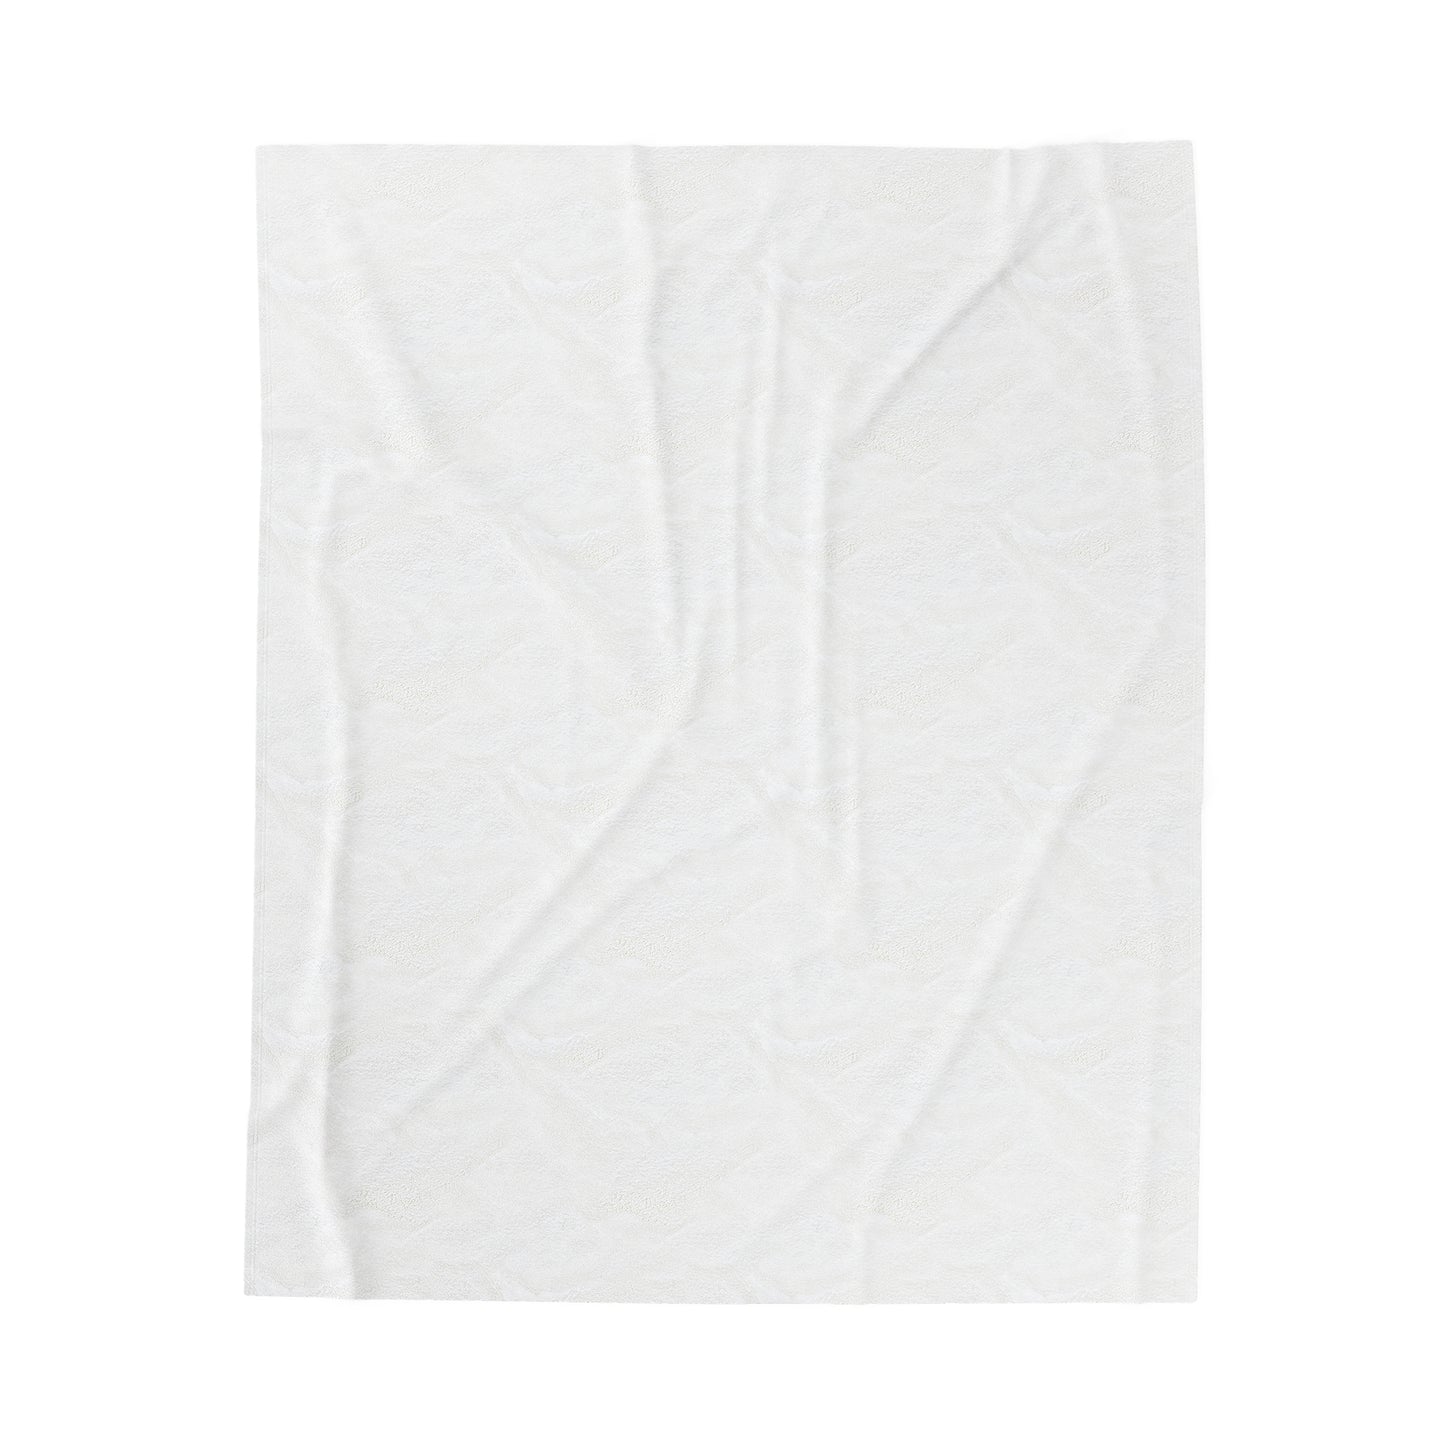 "Círculos entretejidos: un enfoque minimalista" - Estilo minimalista de la manta de felpa de pana alienígena